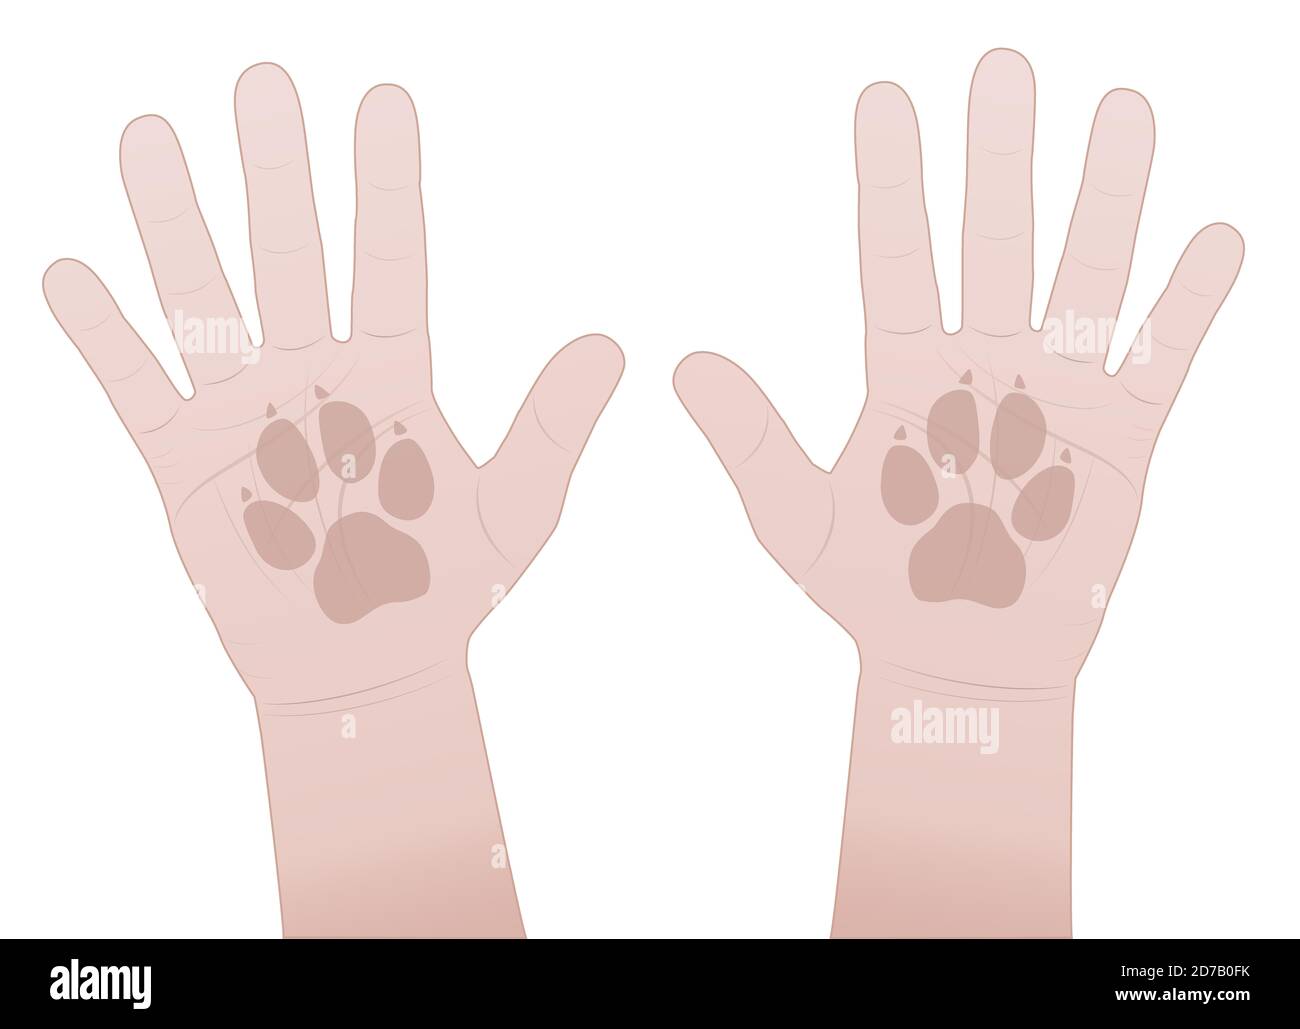 Hände schlagen, Hund. Gib mir fünf Symbol mit menschlichen Händen und Hunden Pfote Prints - Comic-Illustration auf weißem Hintergrund. Stockfoto